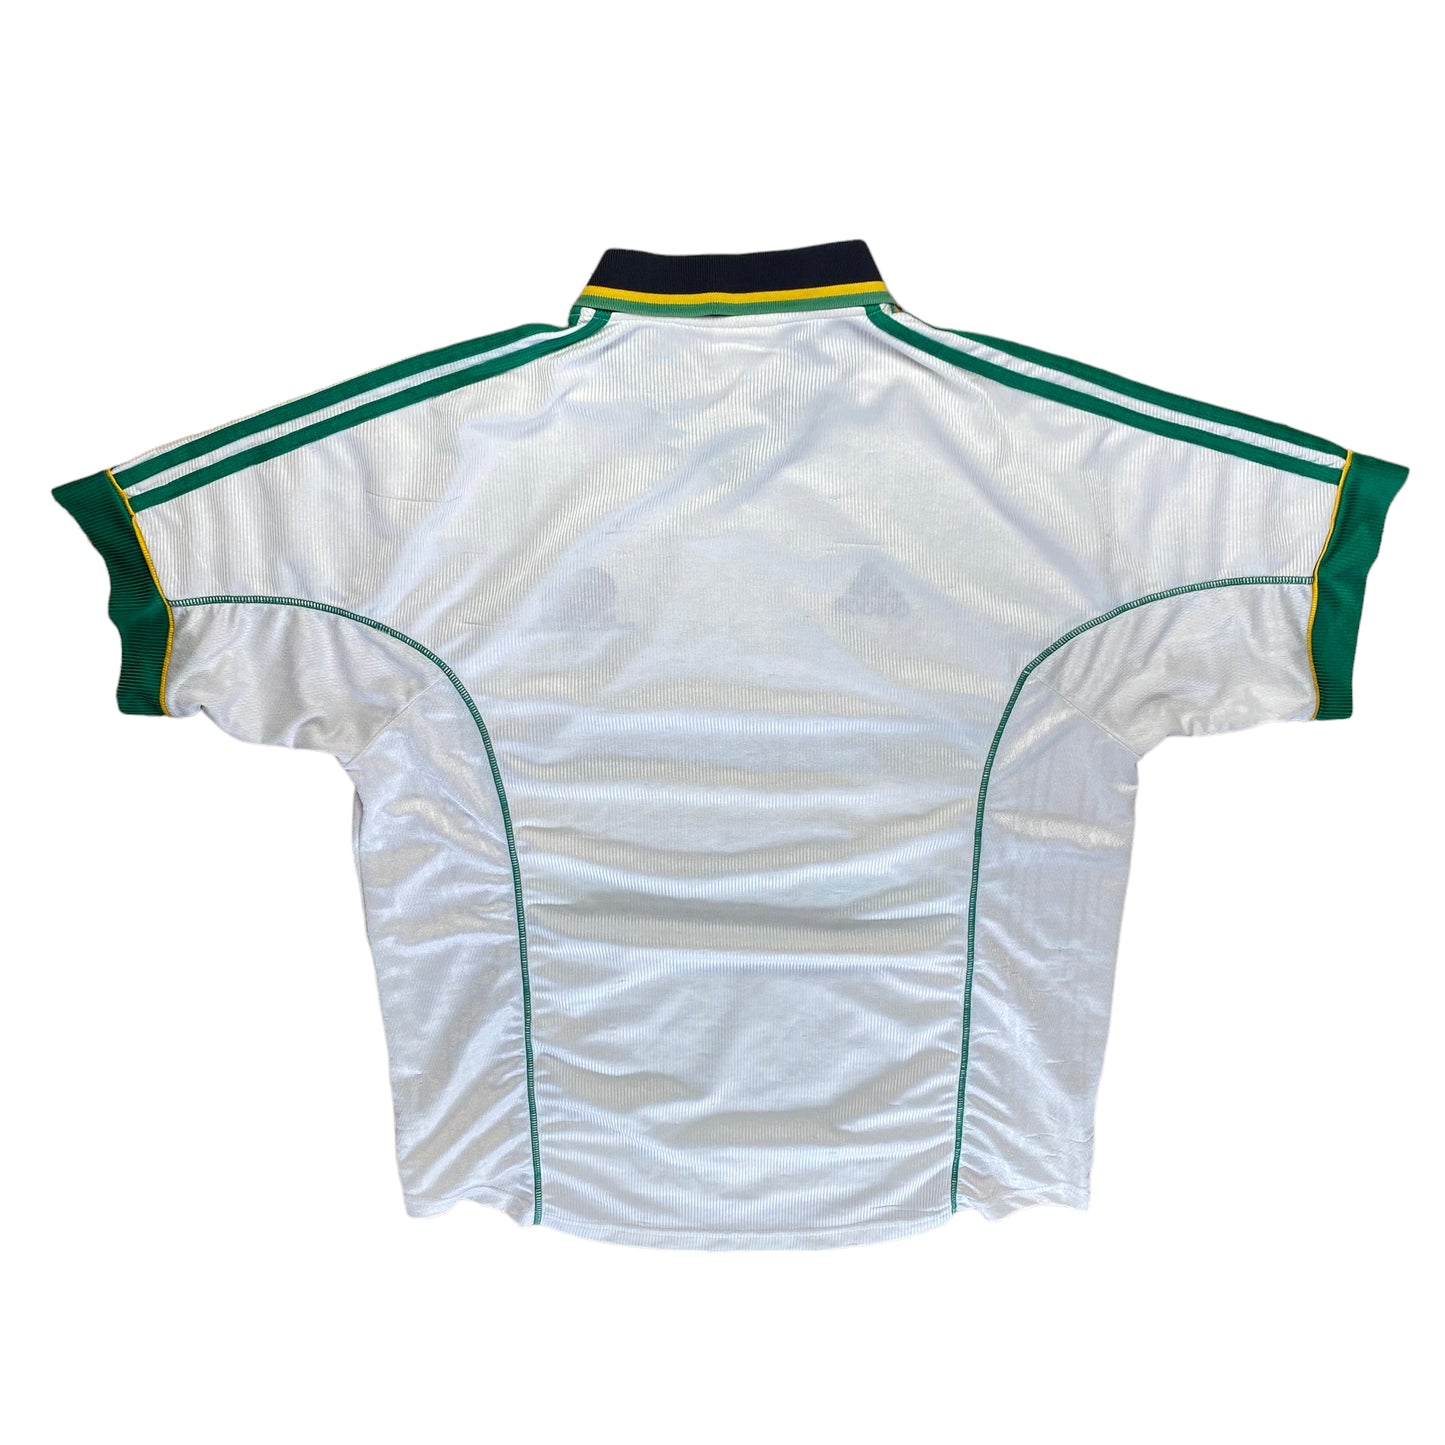 South Africa 1999 Home Shirt (XL)